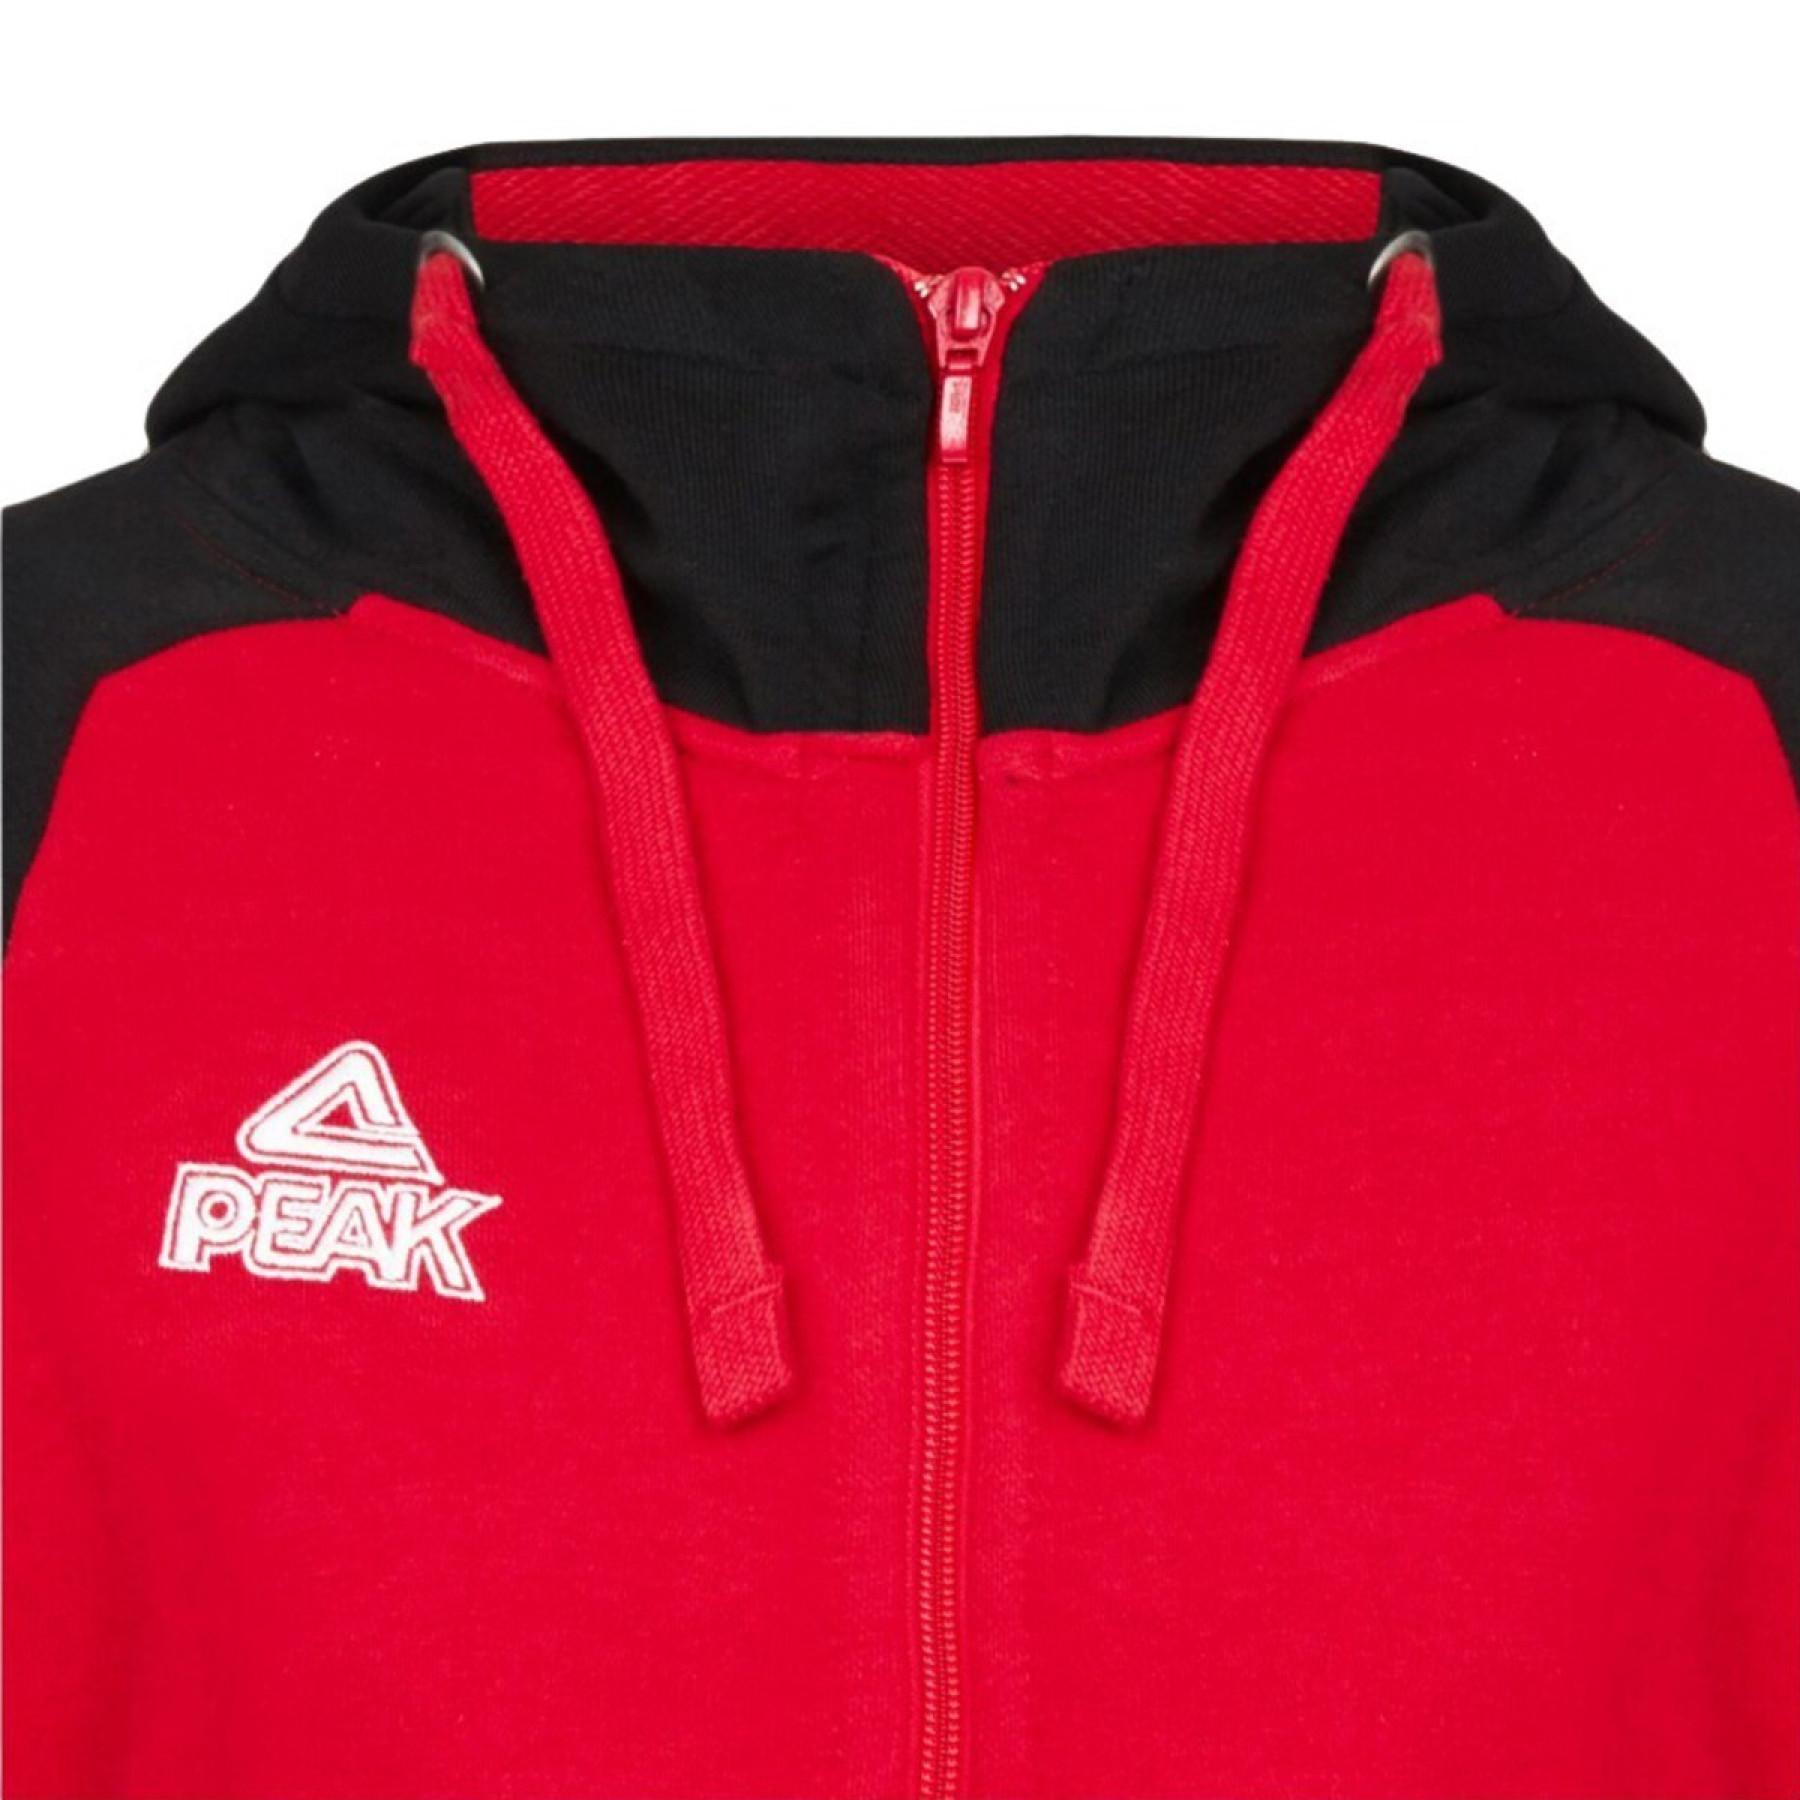 Children's hoodie Peak zip bi-color élite